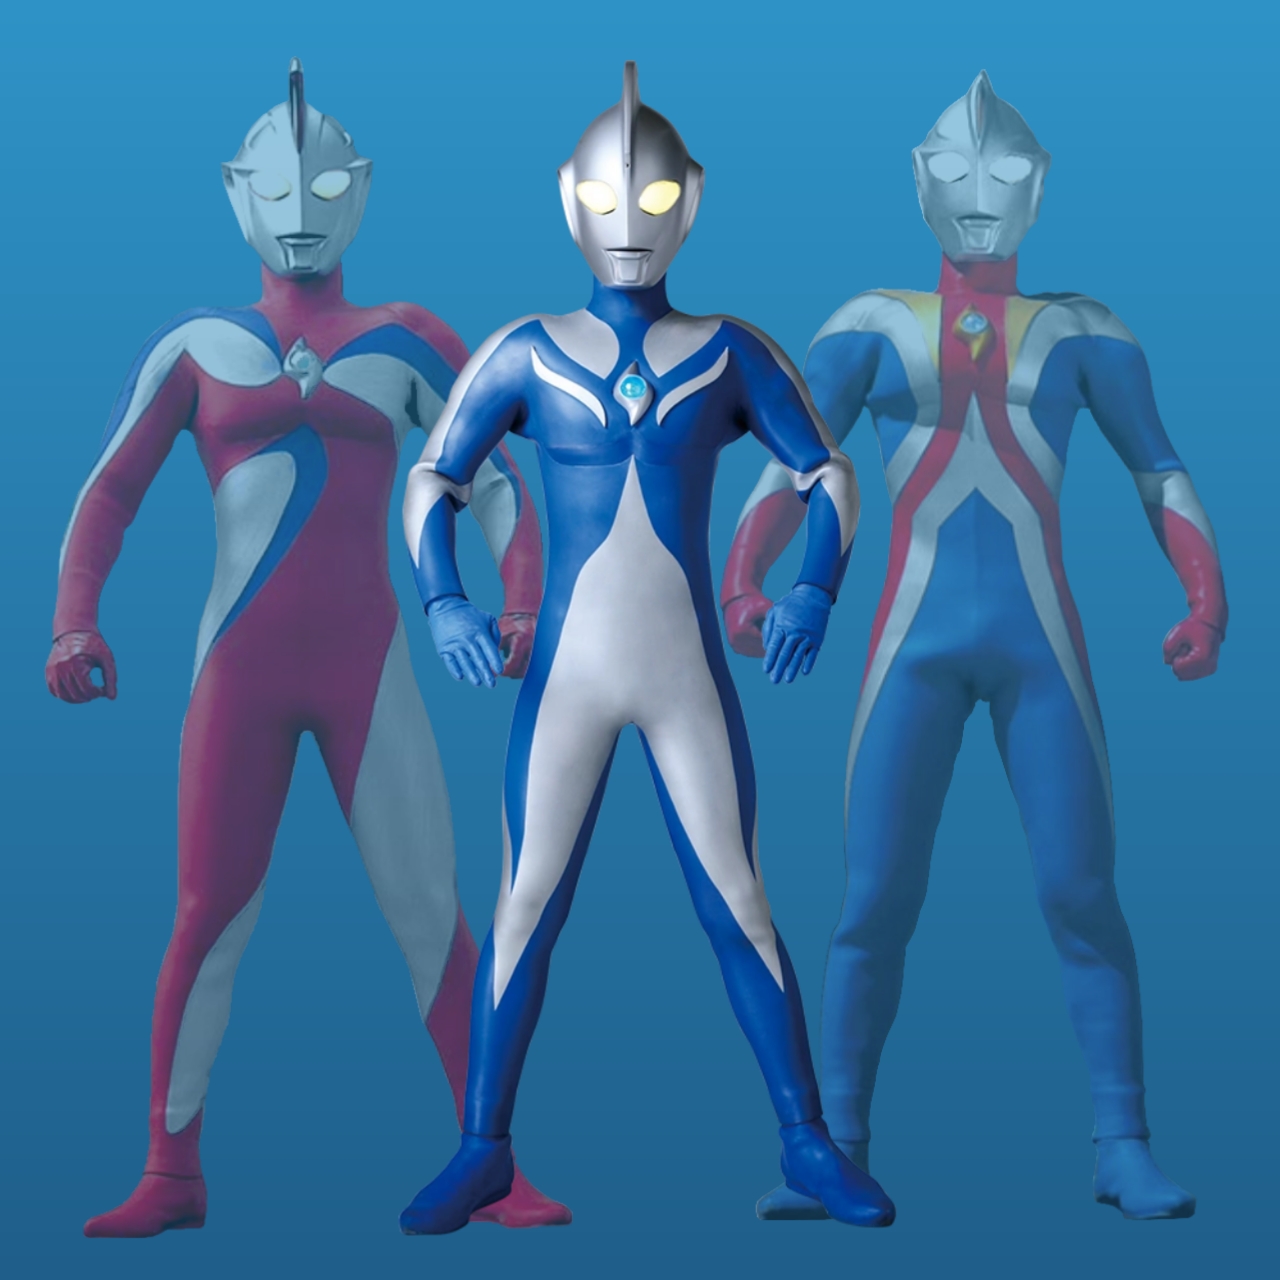 Ultraman Cosmos